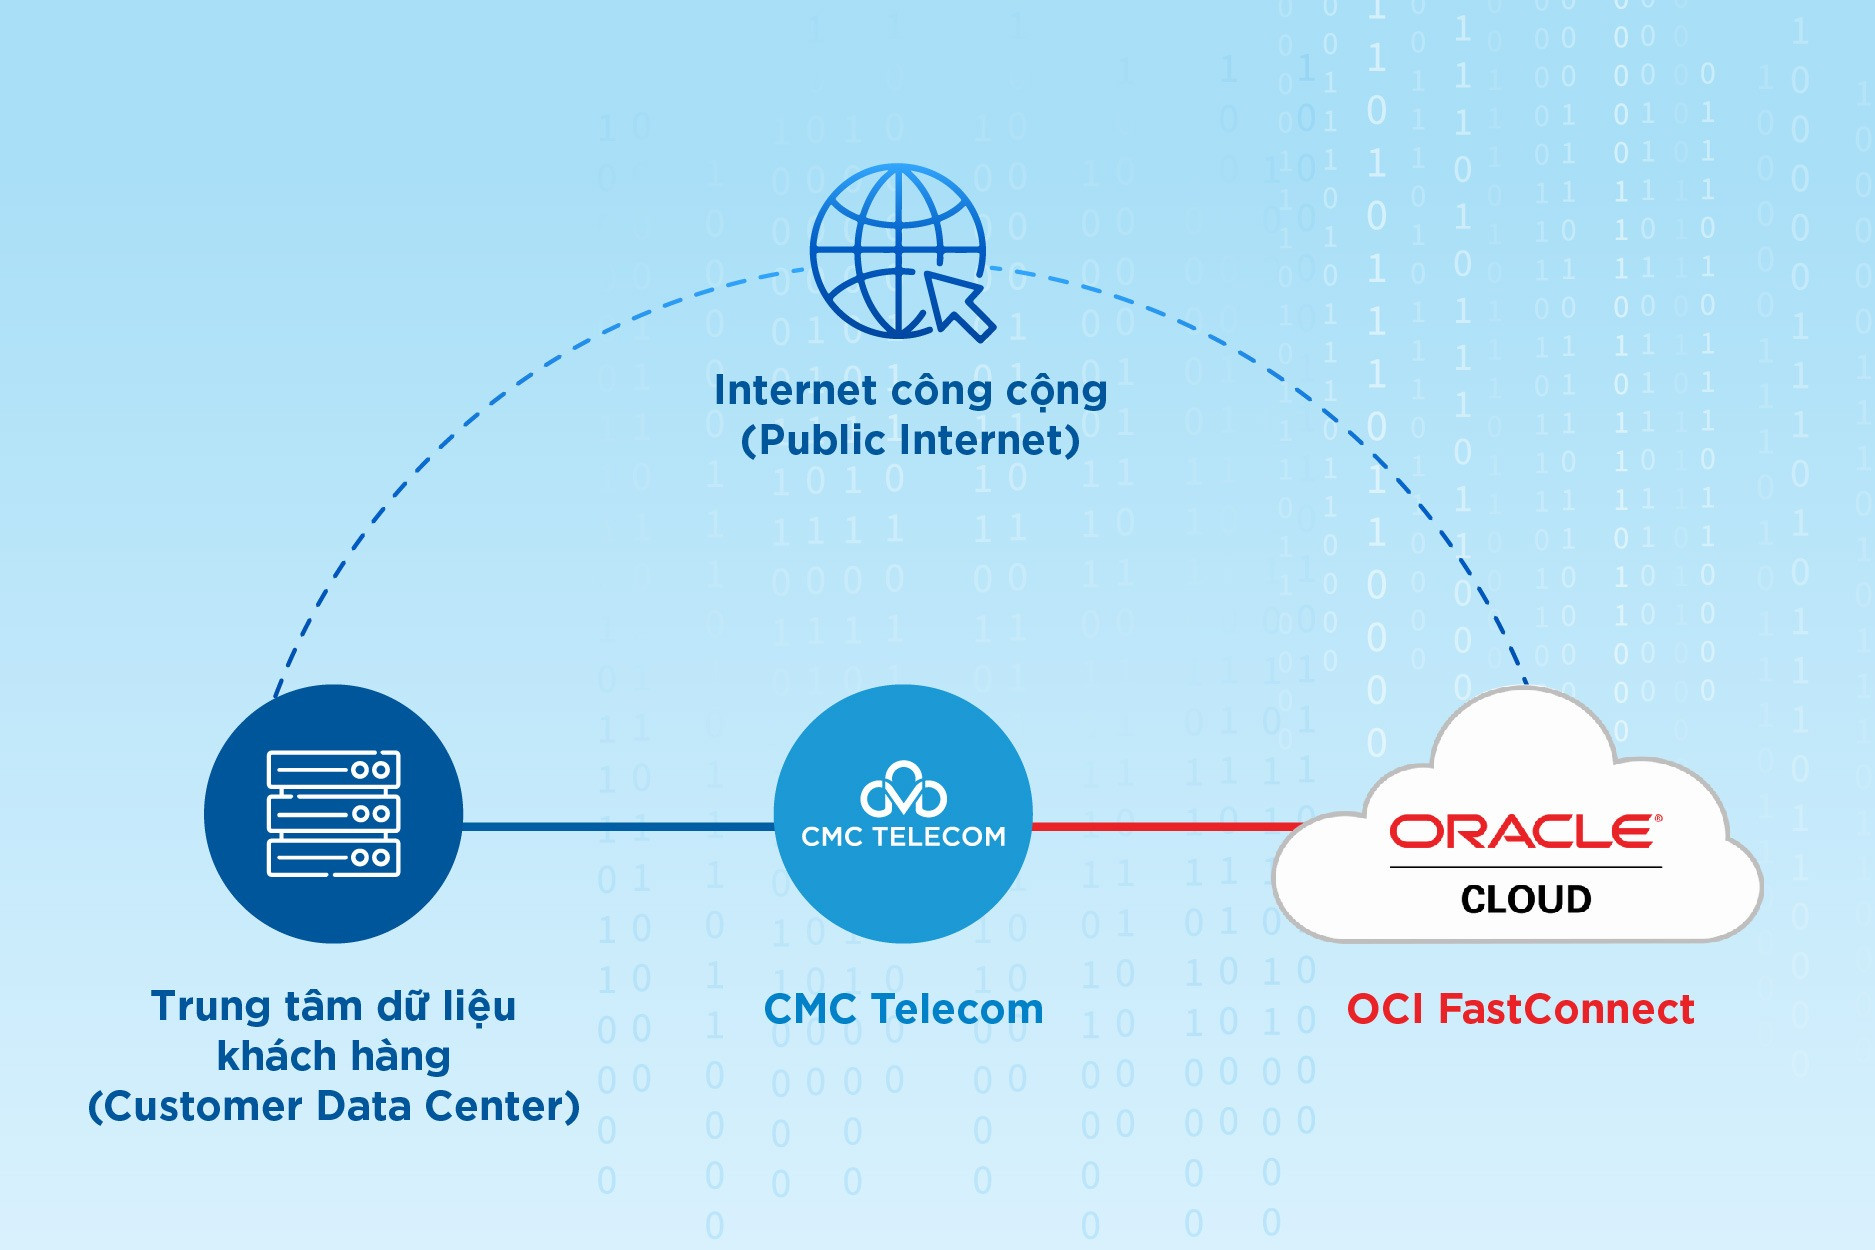 Dịch vụ OCI FastConnect từ CMC Telecom nhanh vượt trội